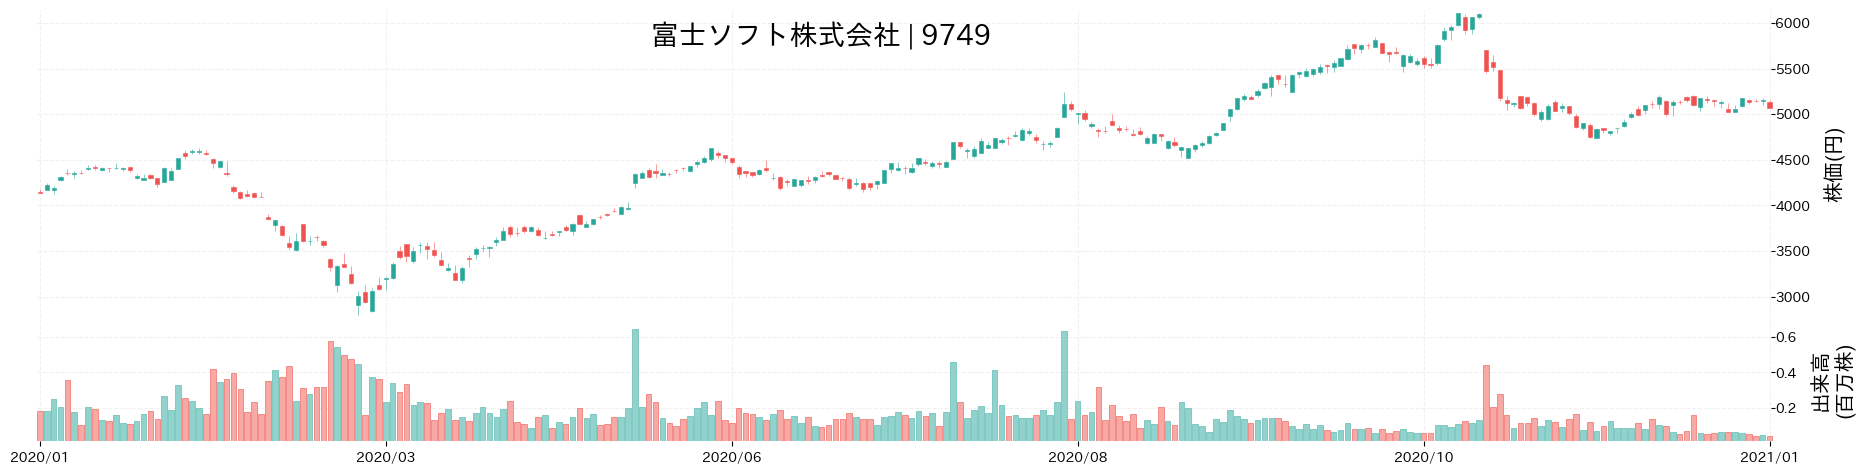 富士ソフトの株価推移(2020)